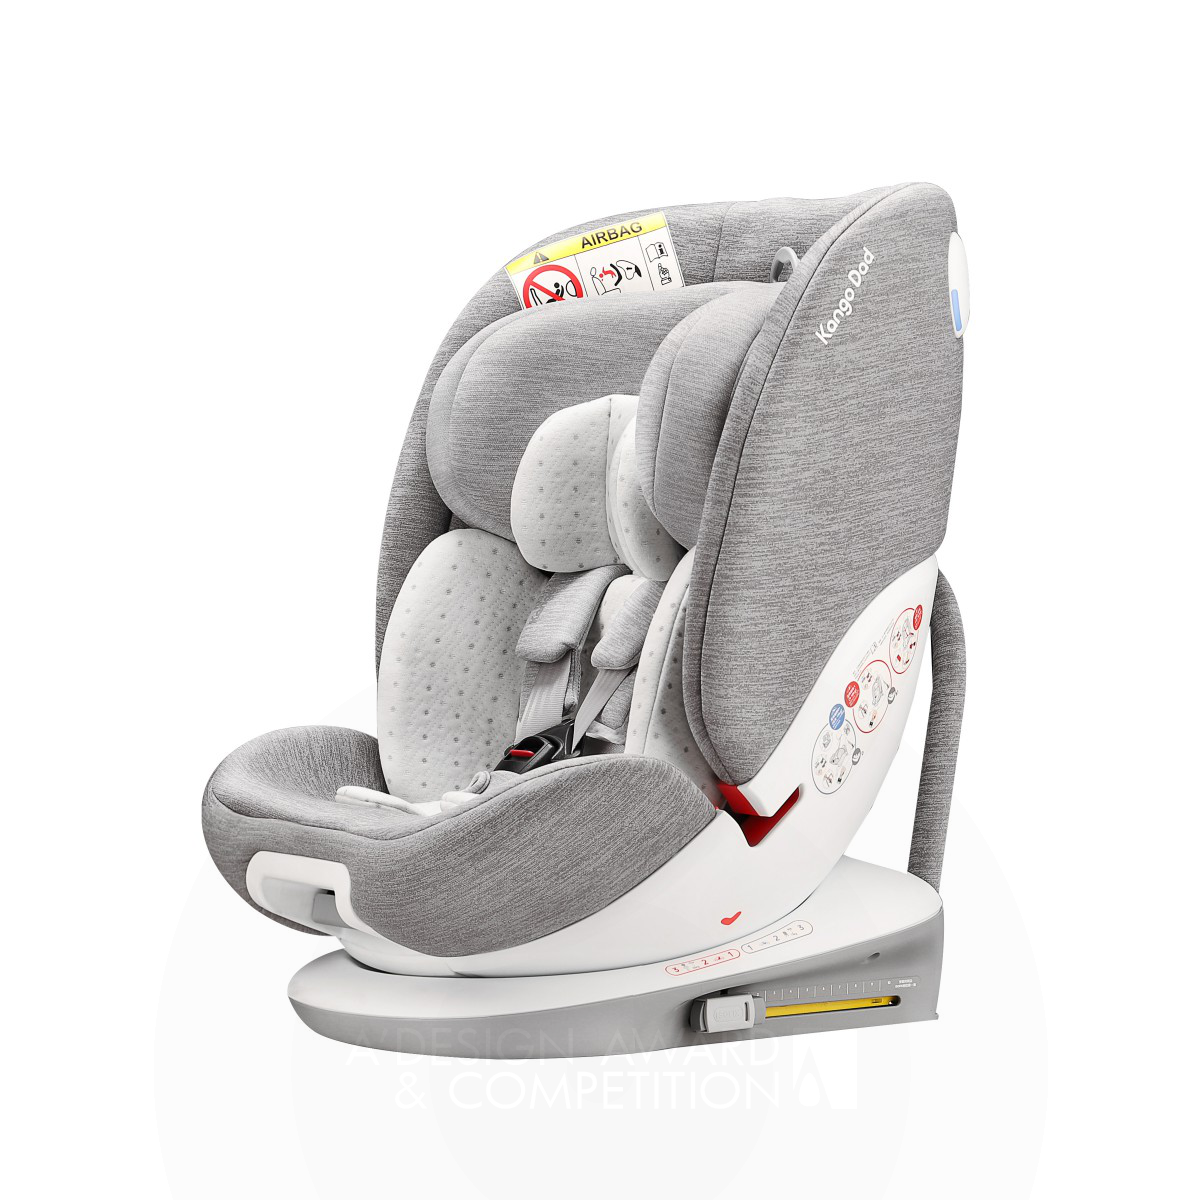 Кресло для автомобиля Kango Dad Funtrip V141: безопасность и комфорт для детей всех возрастов